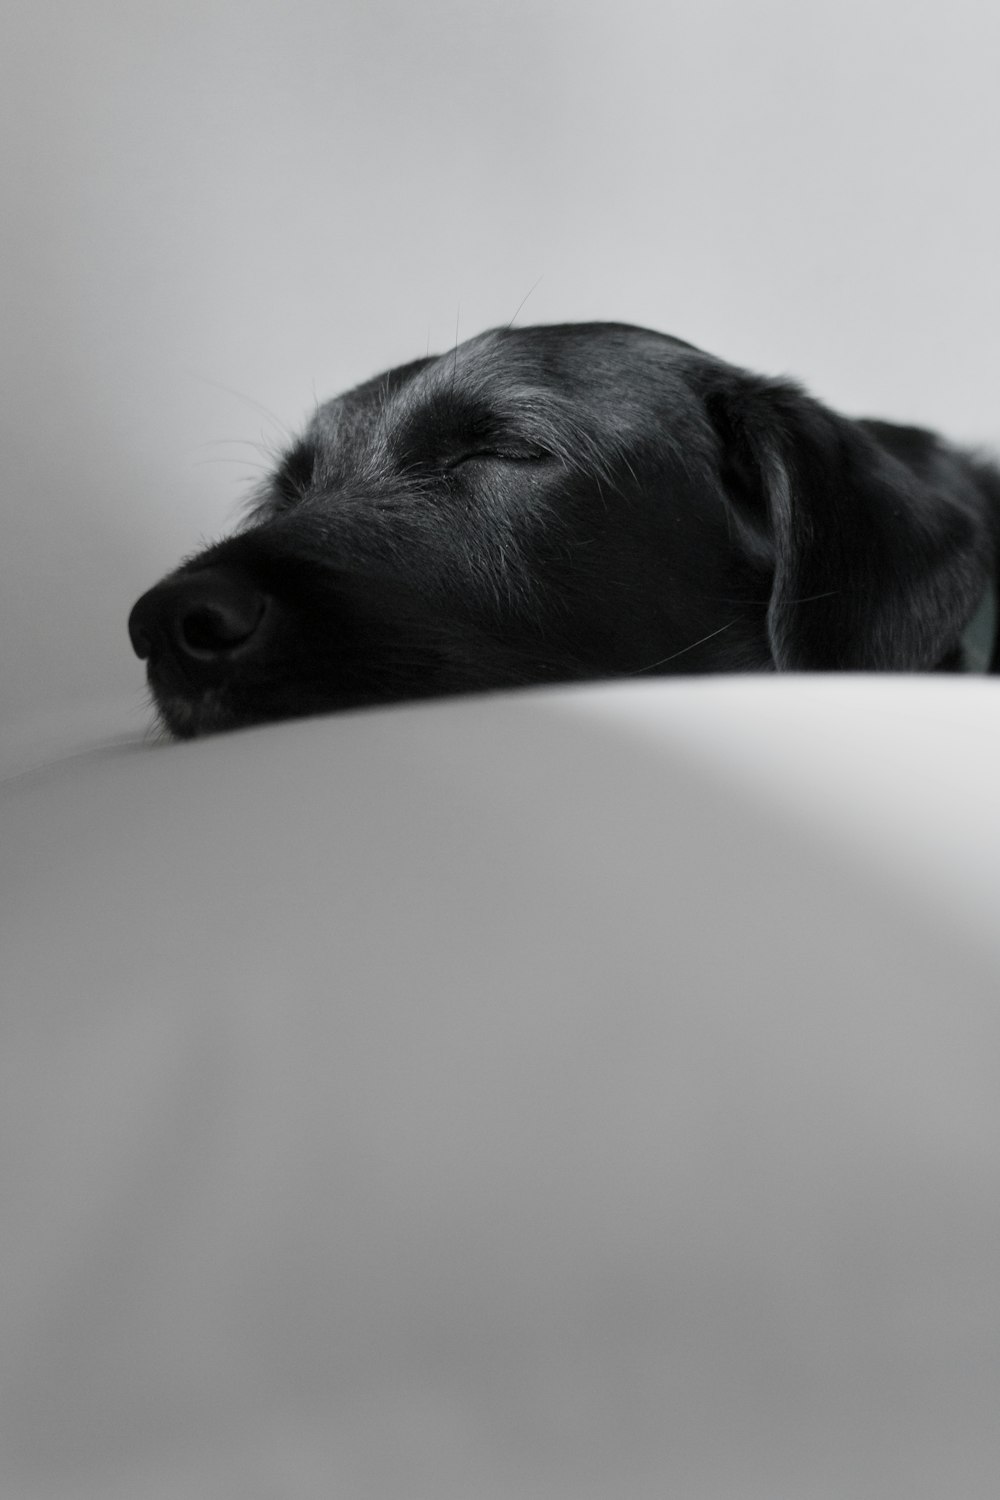 black Labrador retriever sleeping